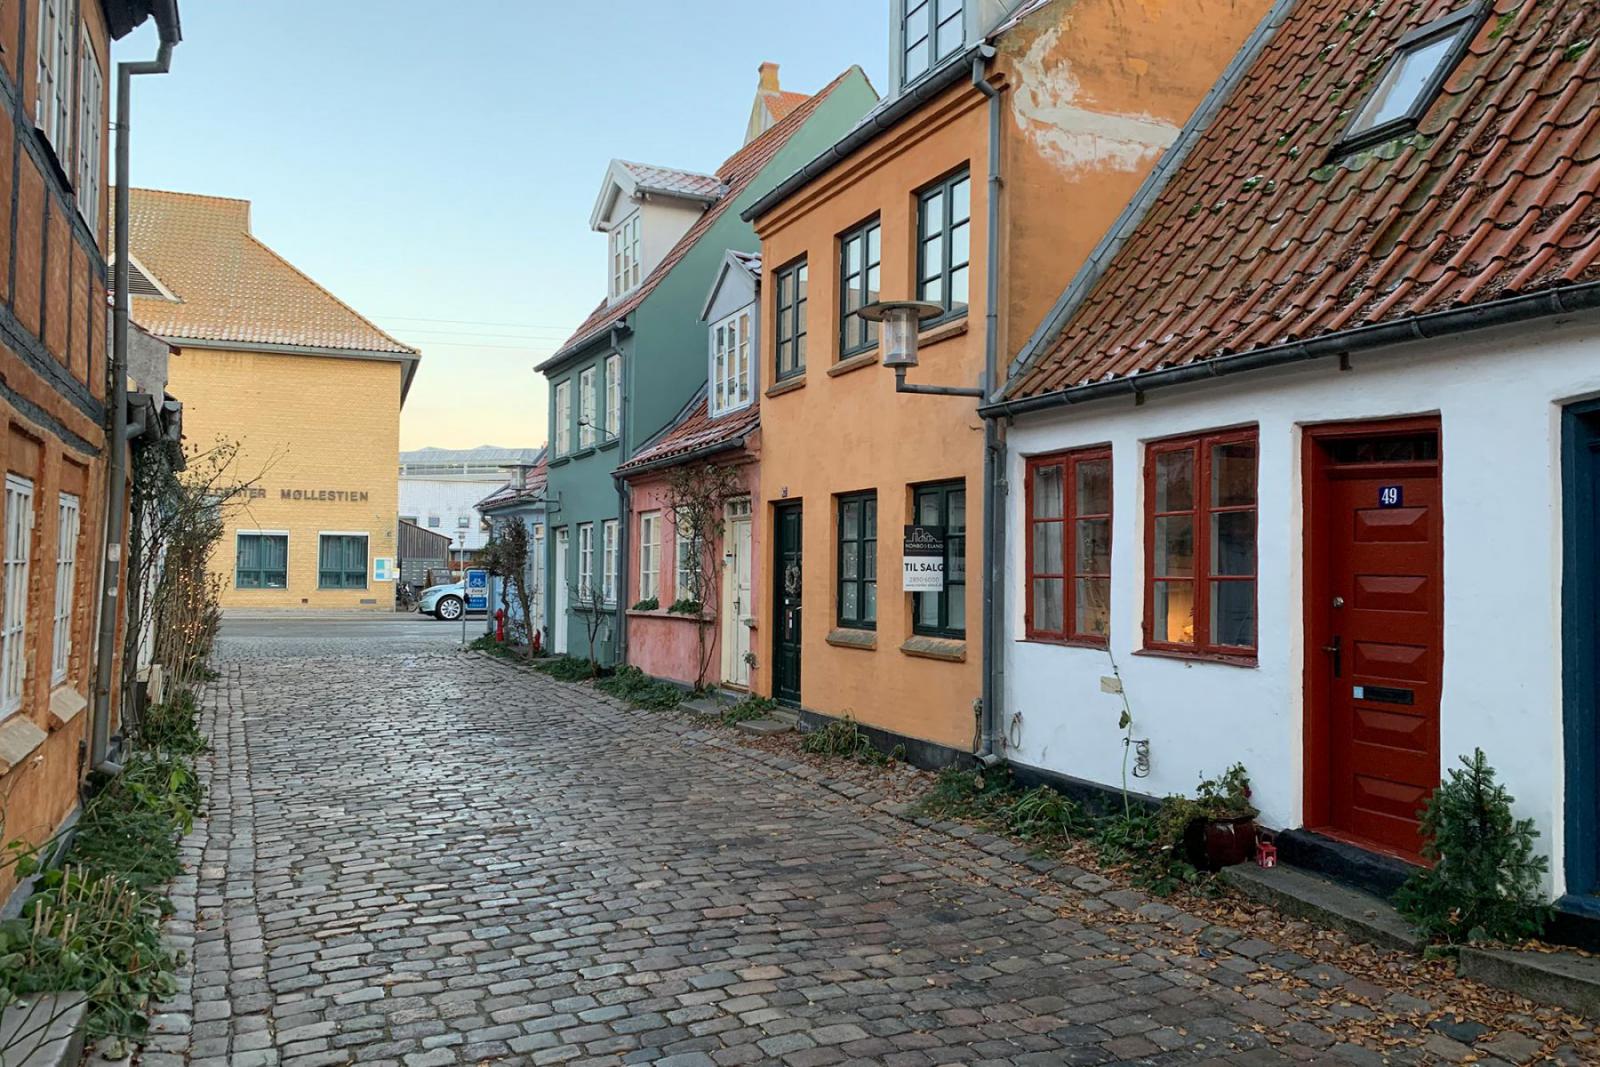 De gekleurde huisjes in Møllestien in Aarhus | CityZapper